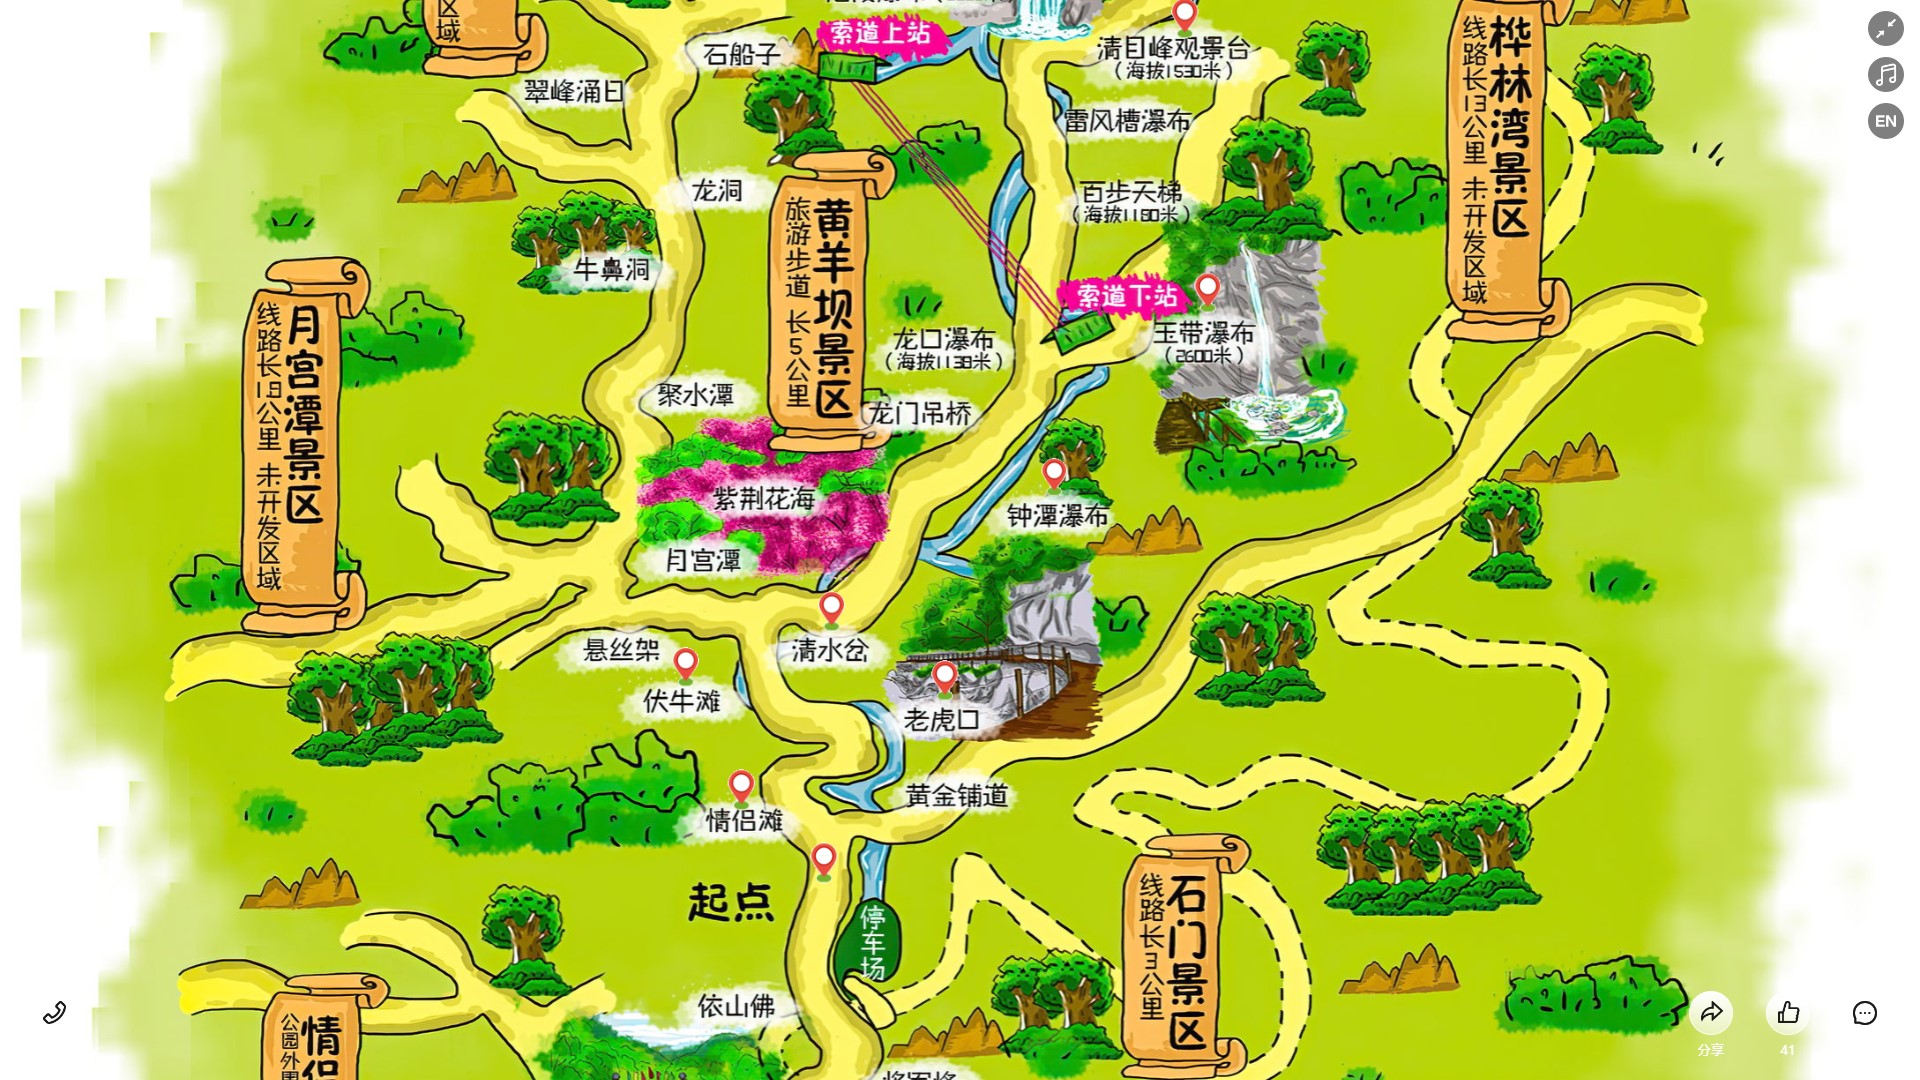 洋县景区导览系统